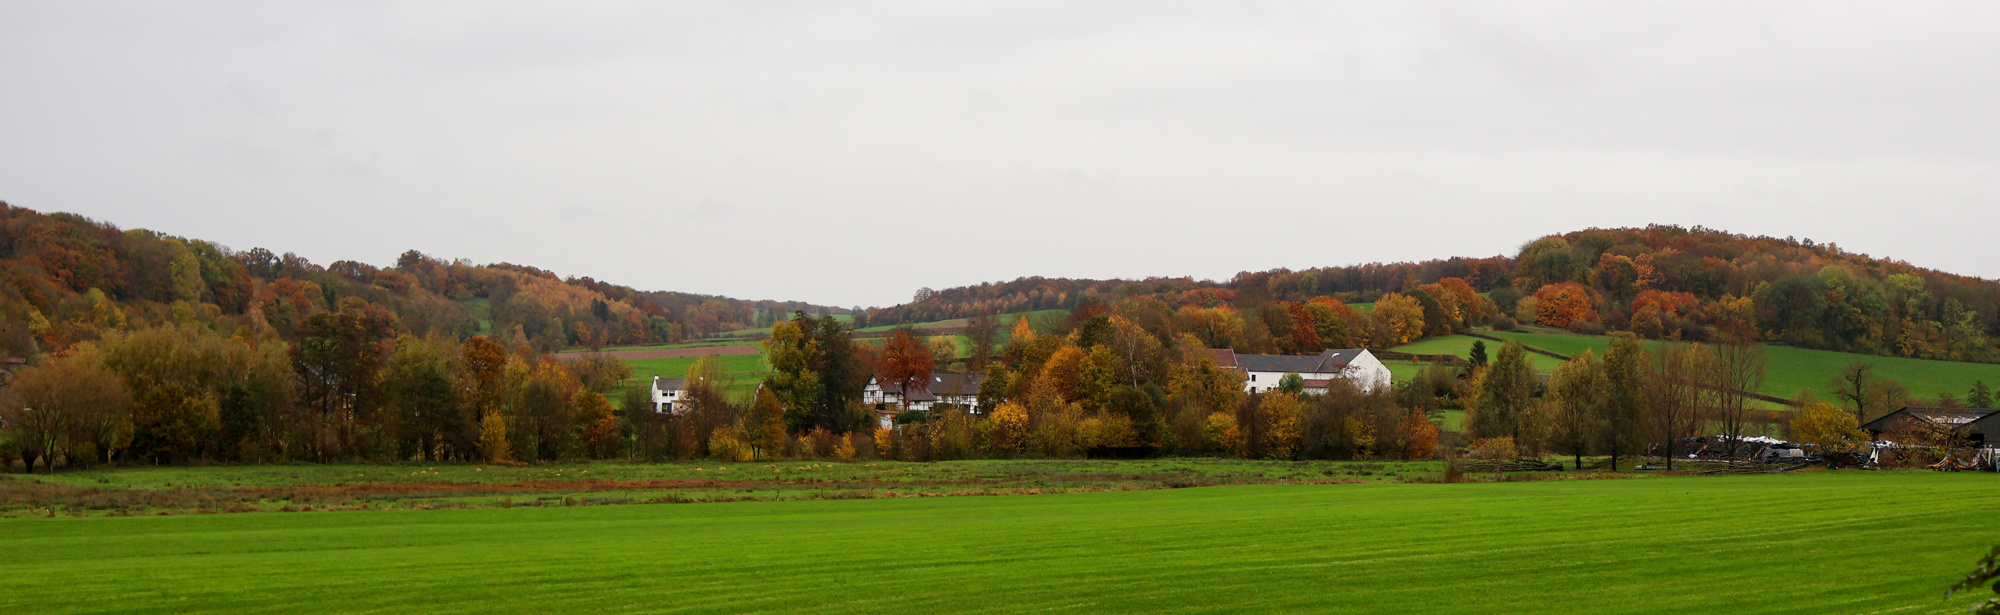 Herfstig uitzicht over het heuvelland met herfstkleuren. 